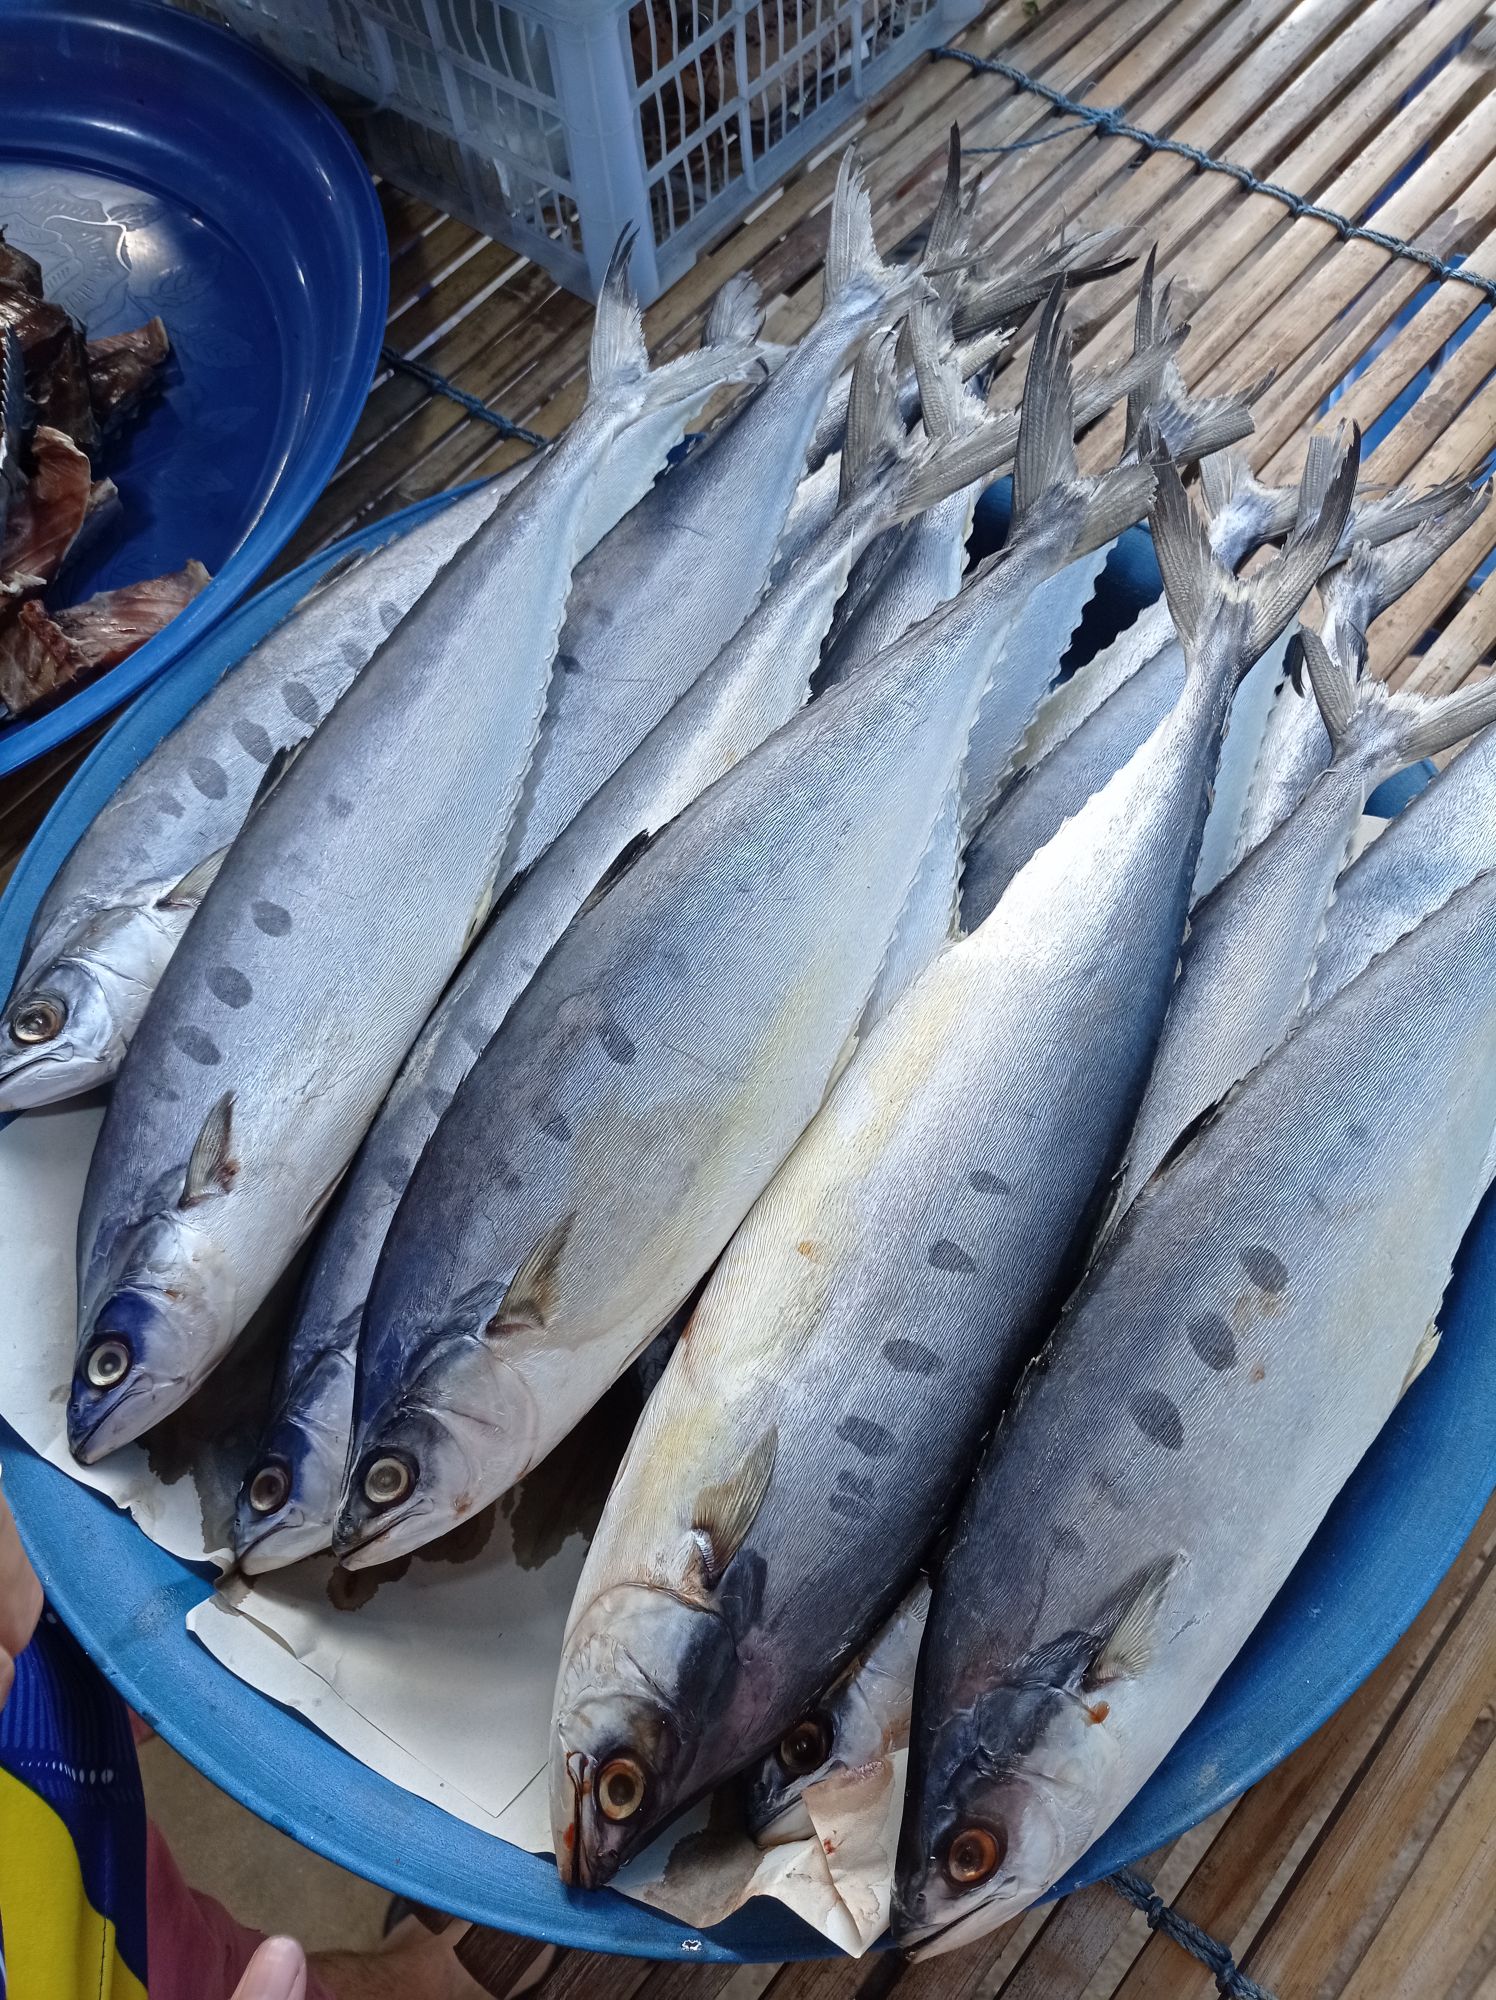 ปลาสีเสียด ปลาสีเสียดเค็ม ปลาสีเสียดทอดก็ได้ ปลาสีเสียดตากแห้ง ปลาสีเสียดแดดเดียว ของดีเมืองกระบี่ 500 กรัม | Lazada.co.th